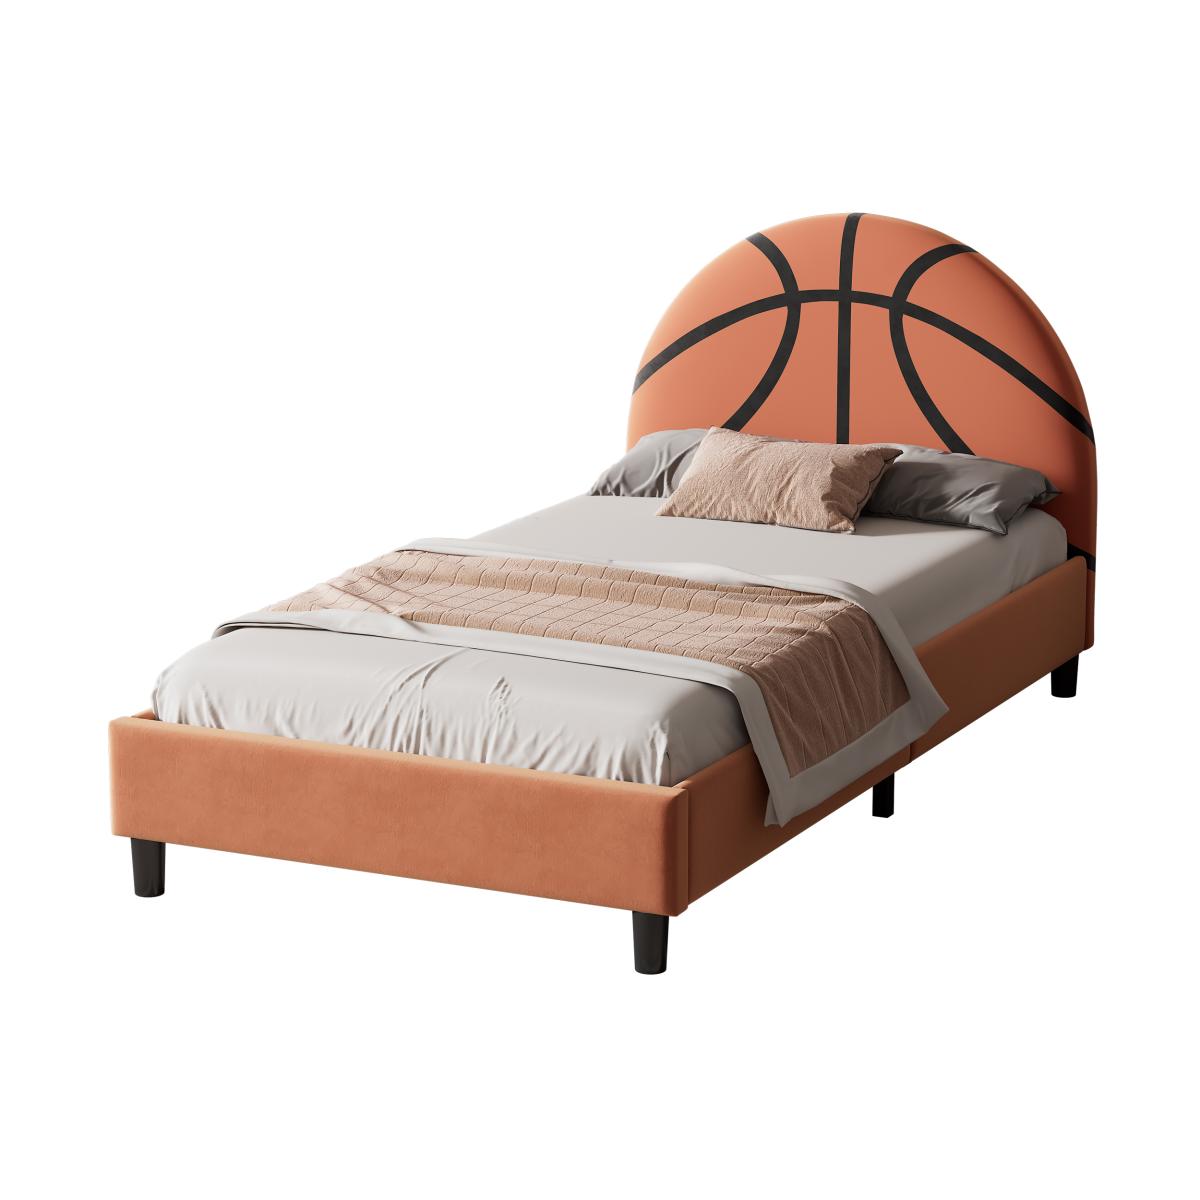 Basketball Design Upholstered Twin Platform Bed Sport Style Bed for Boys & Girls, Teens, Orange